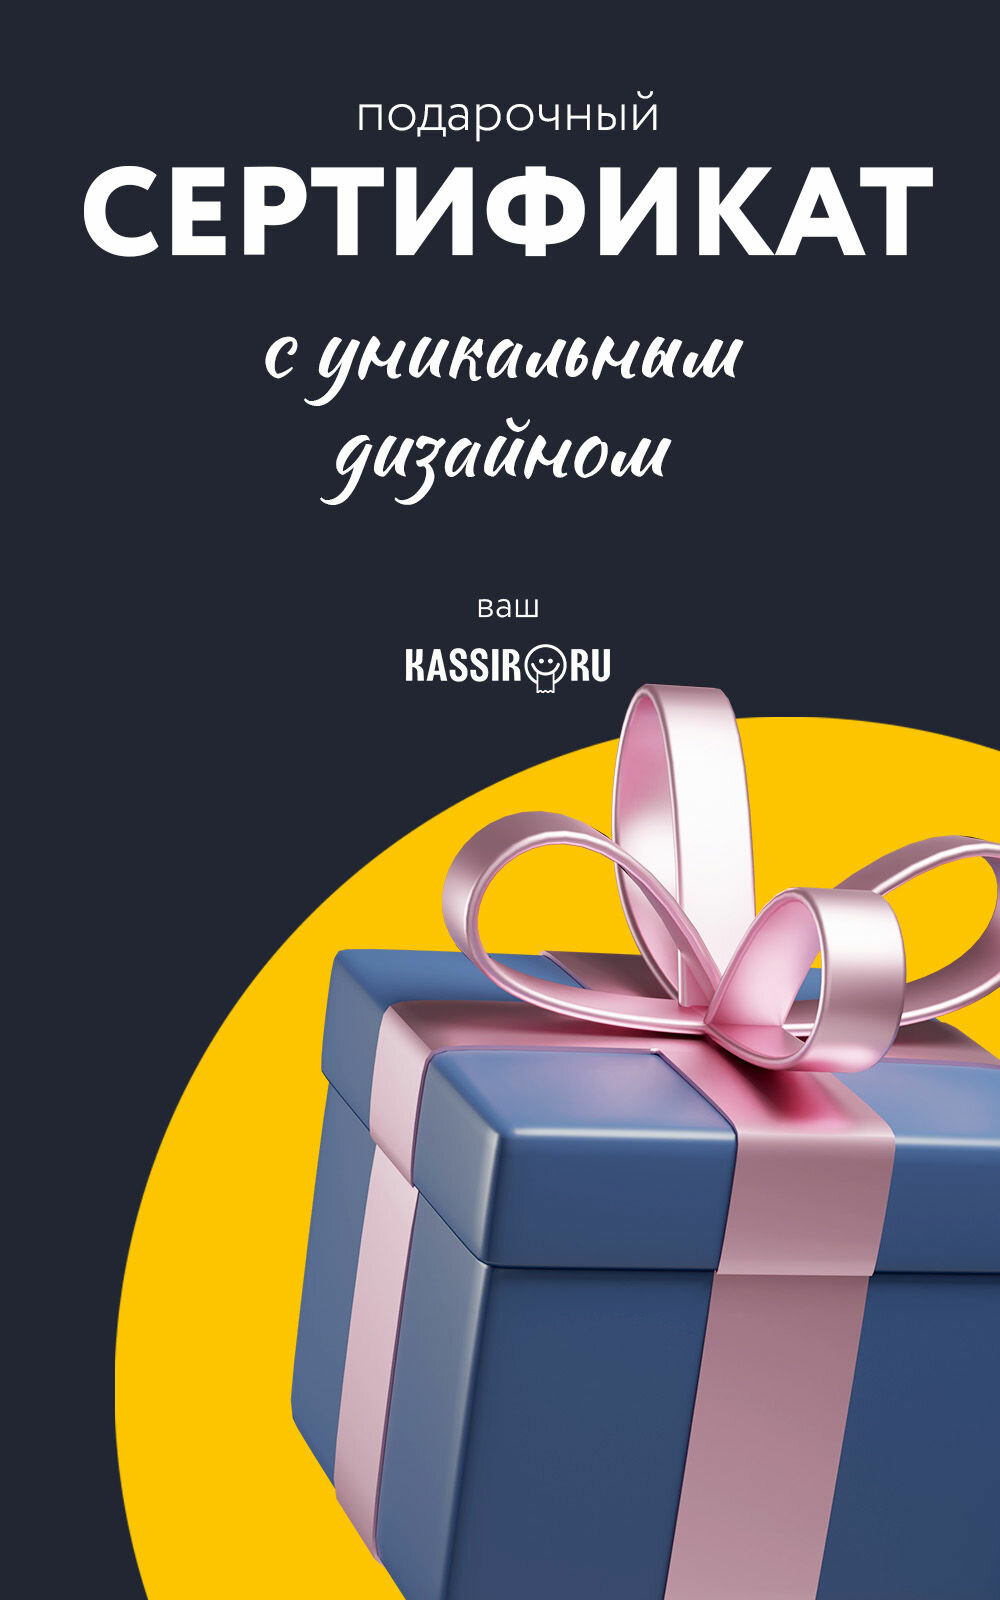 Подарочный сертификат Kassir.ru 1000 руб.